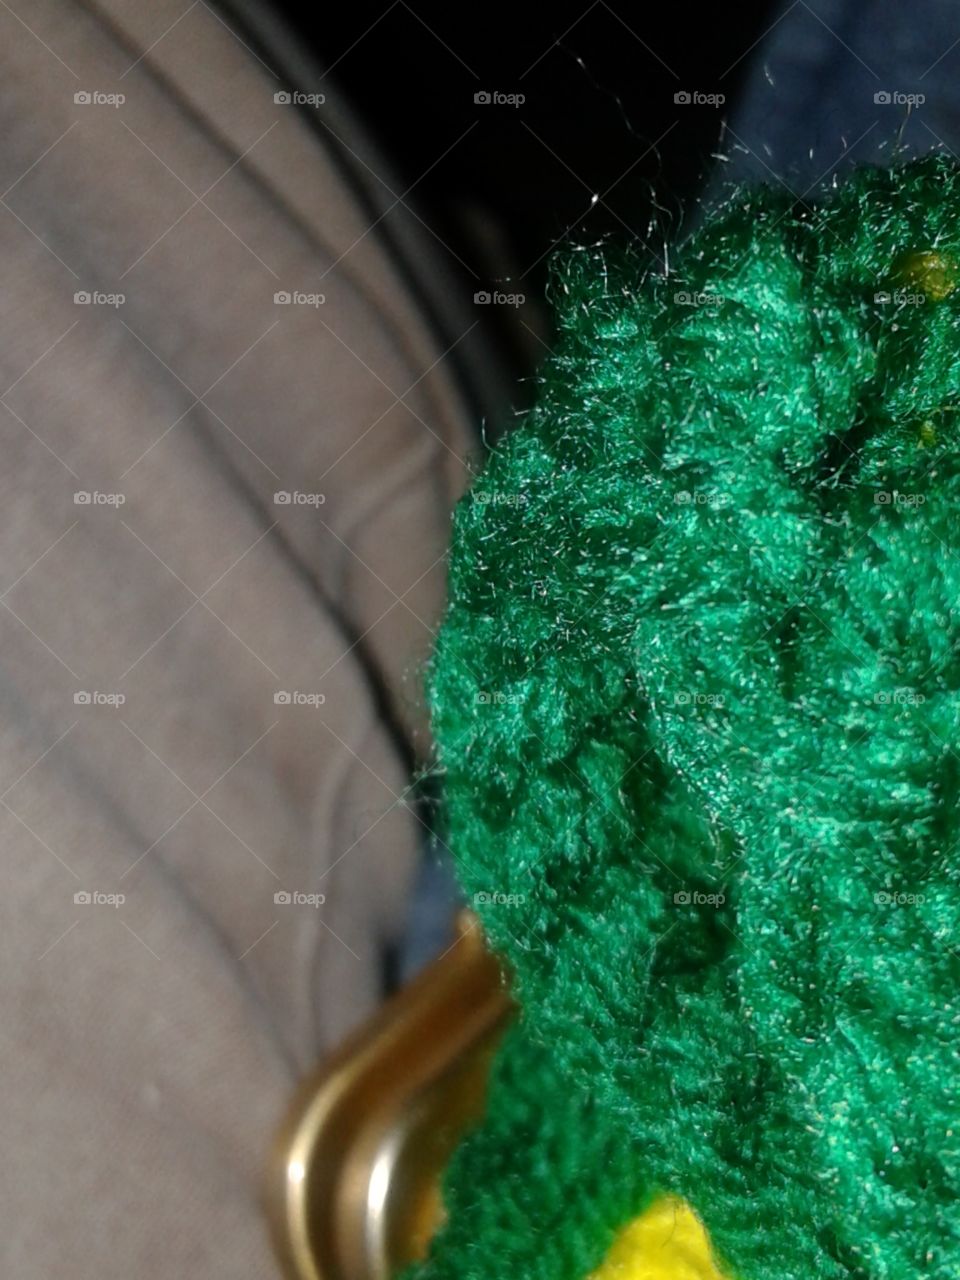 crocheted in green